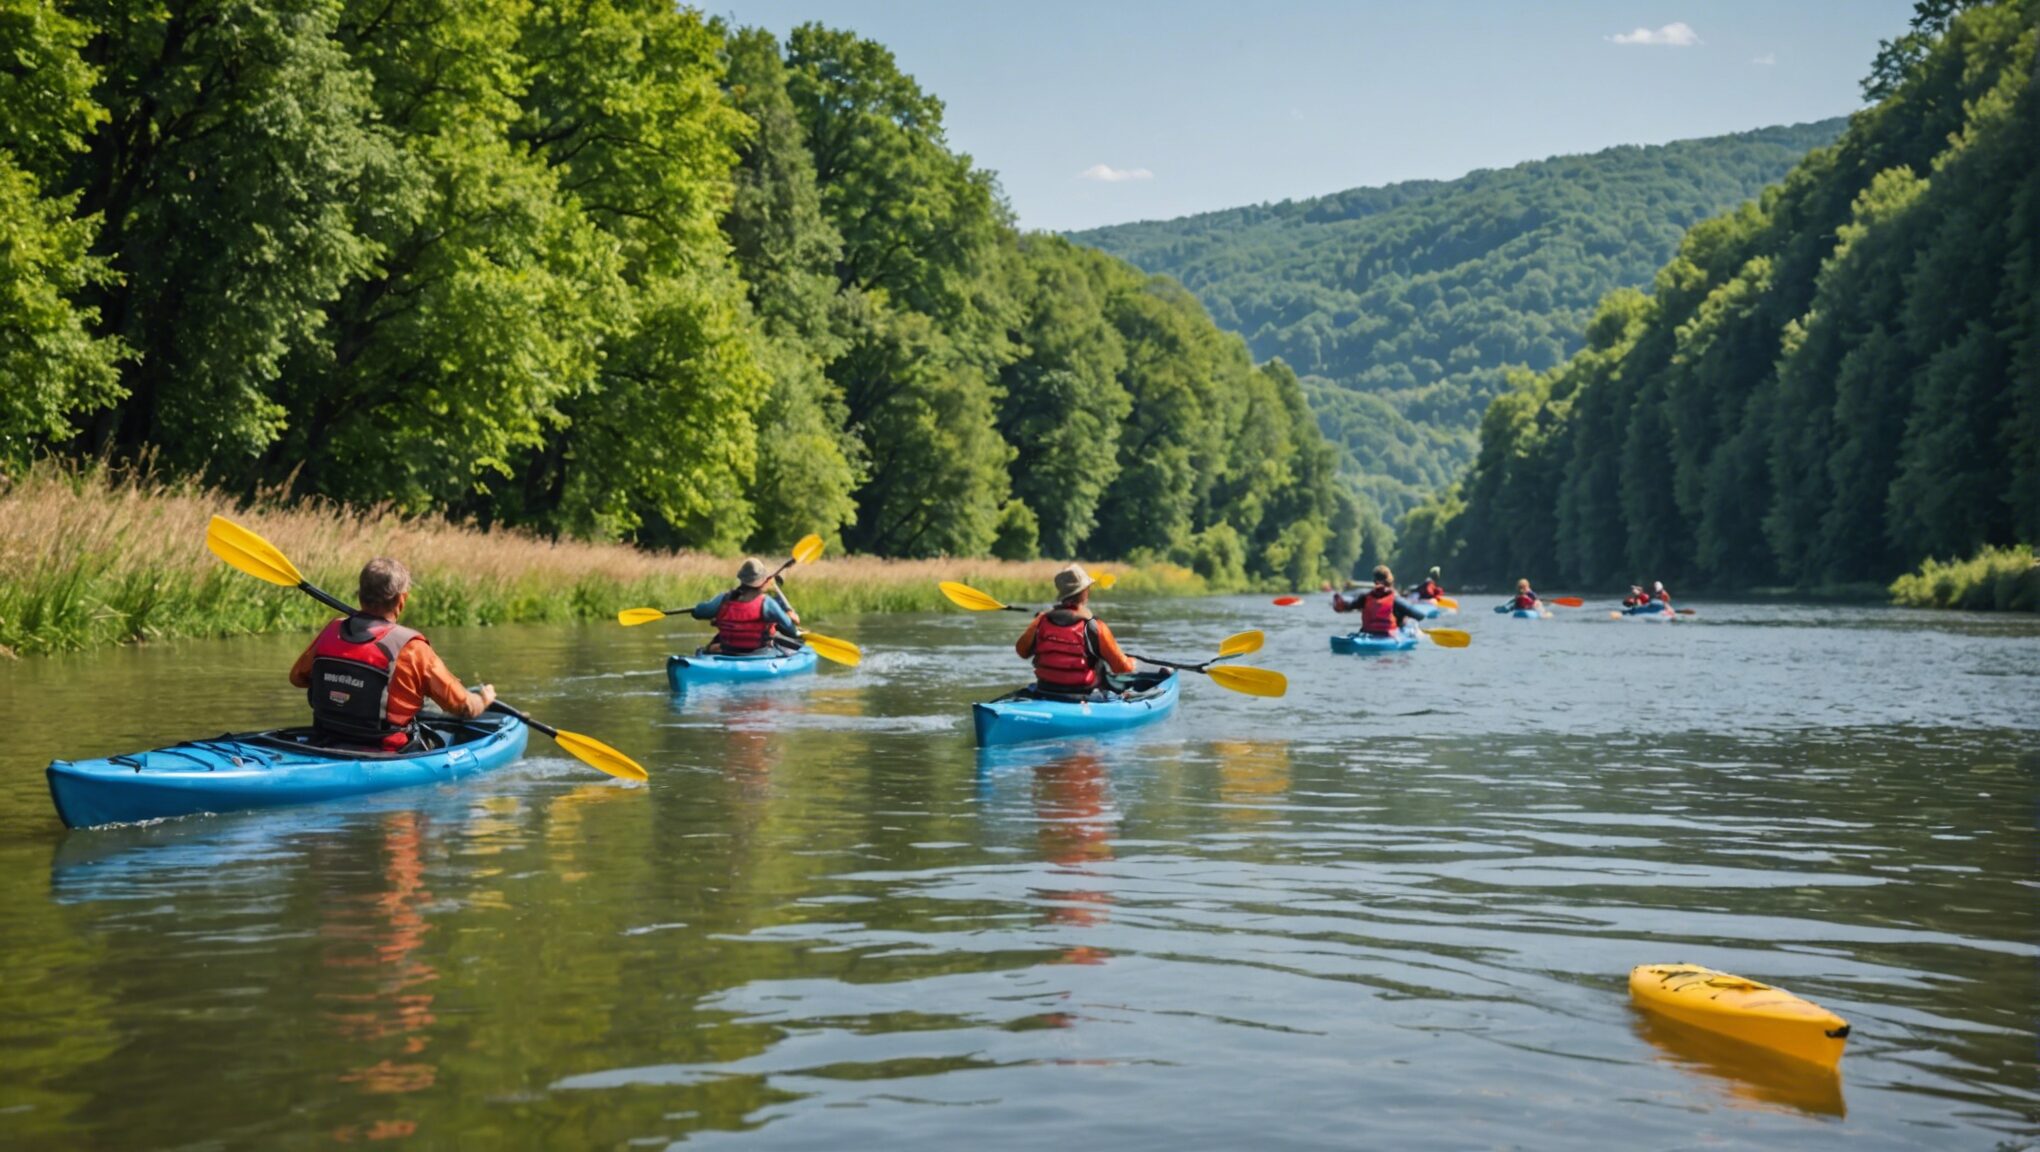 découvrez comment vivre une aventure mémorable en famille en pratiquant le canoë-kayak sur la magnifique rivière dordogne. des souvenirs inoubliables garantis !